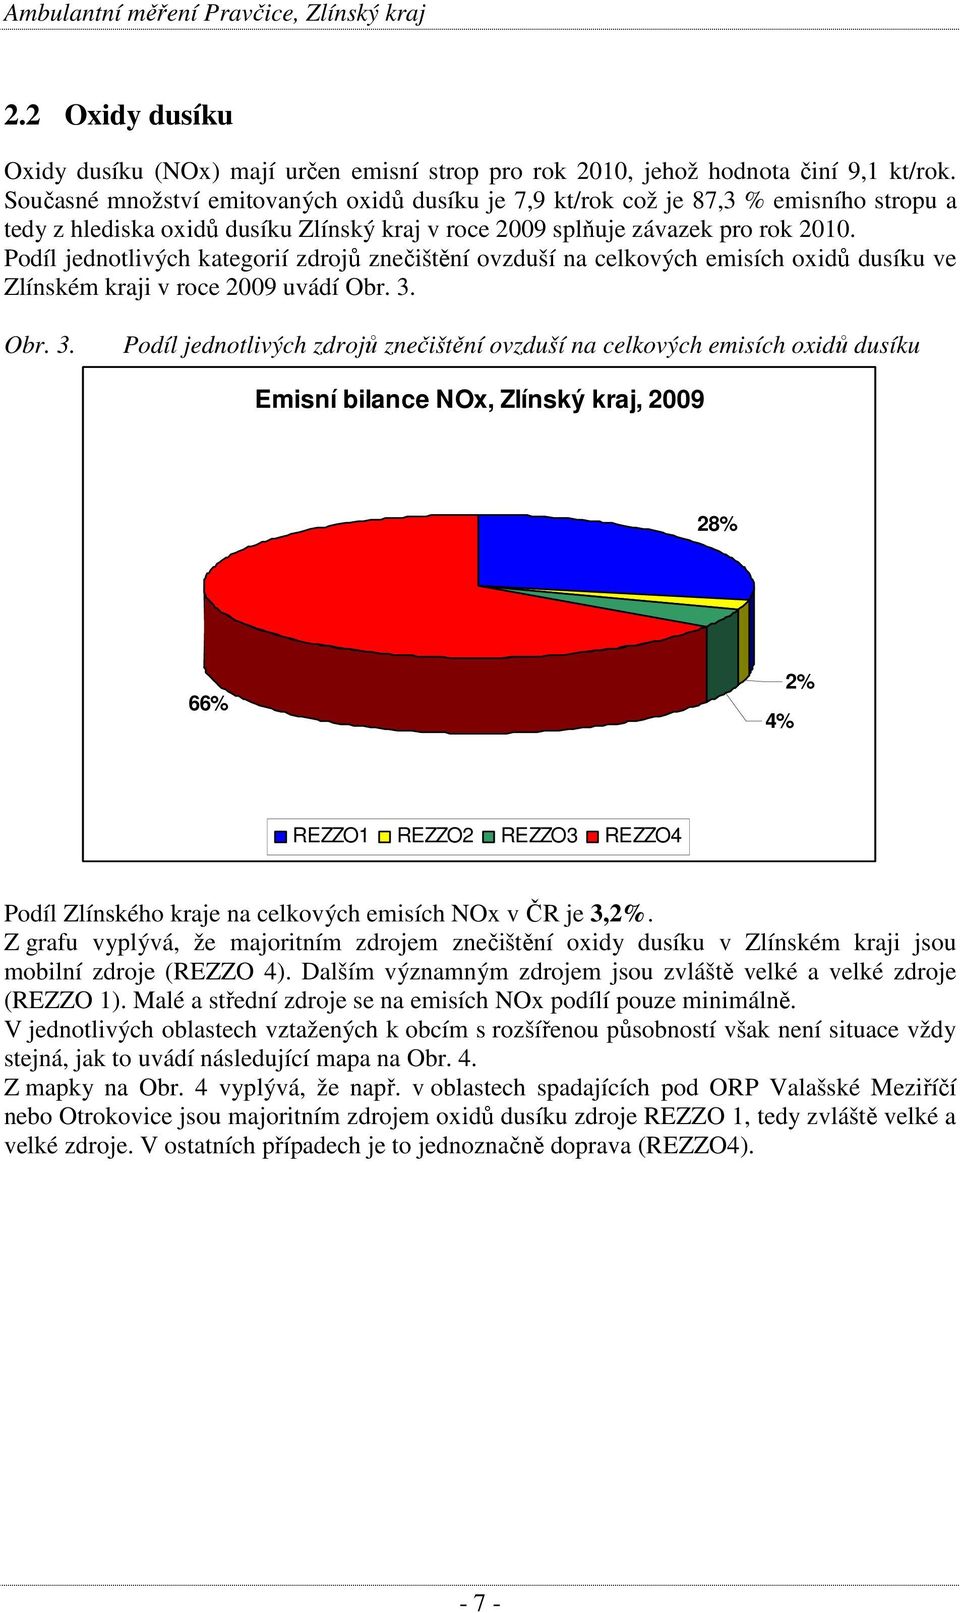 Podíl jednotlivých kategorií zdrojů znečištění ovzduší na celkových emisích oxidů dusíku ve Zlínském kraji v roce 2009 uvádí Obr. 3.